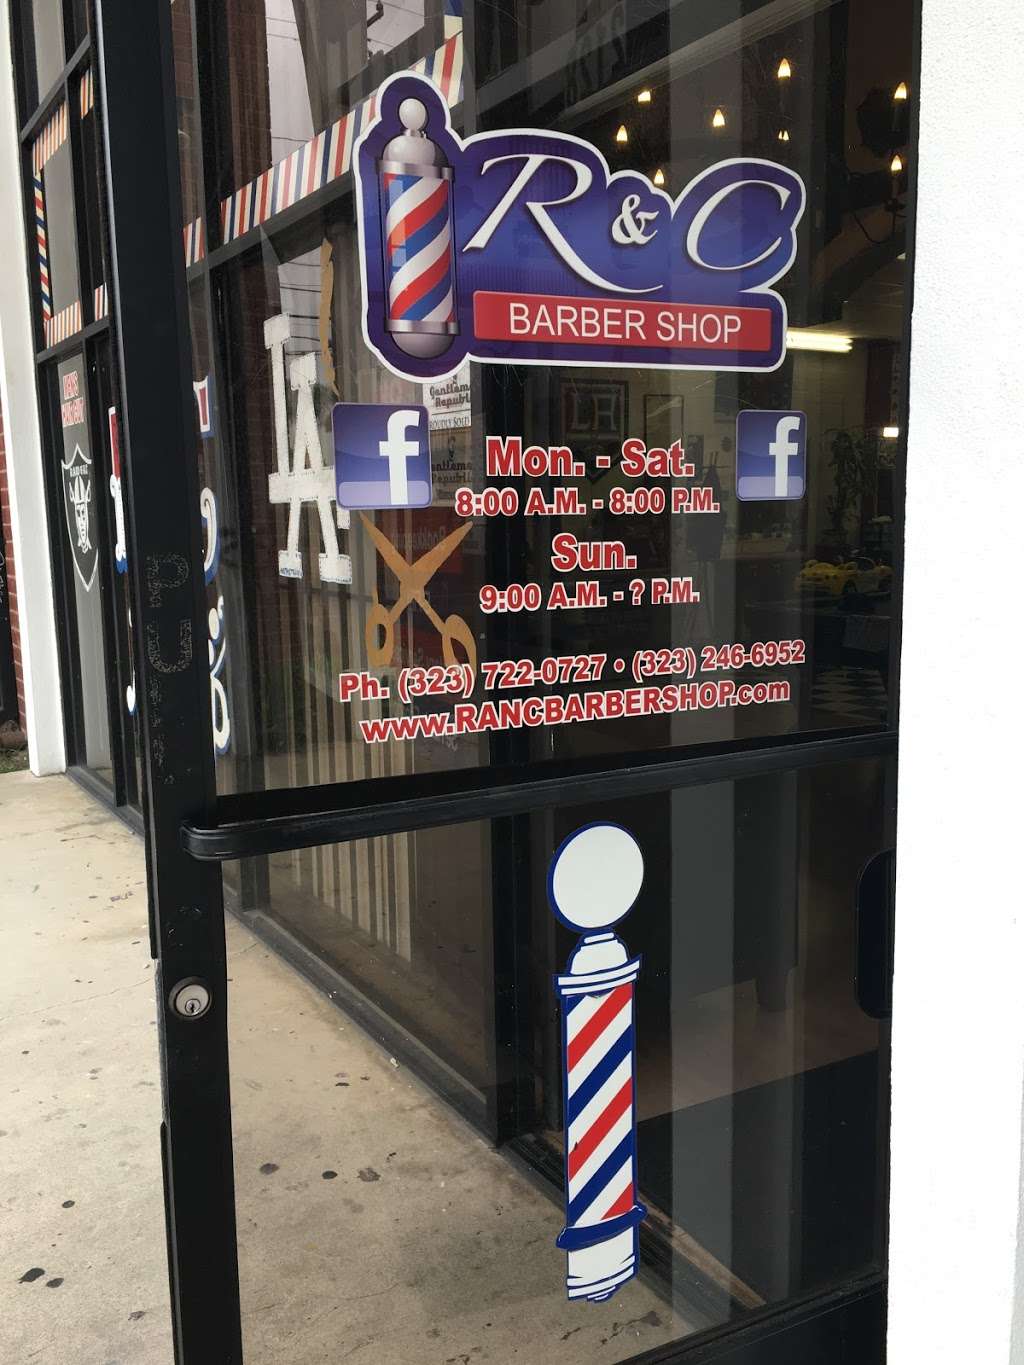 R & C Barbershop | 2130 W Whittier Blvd, Montebello, CA 90640 | Phone: (323) 246-6952